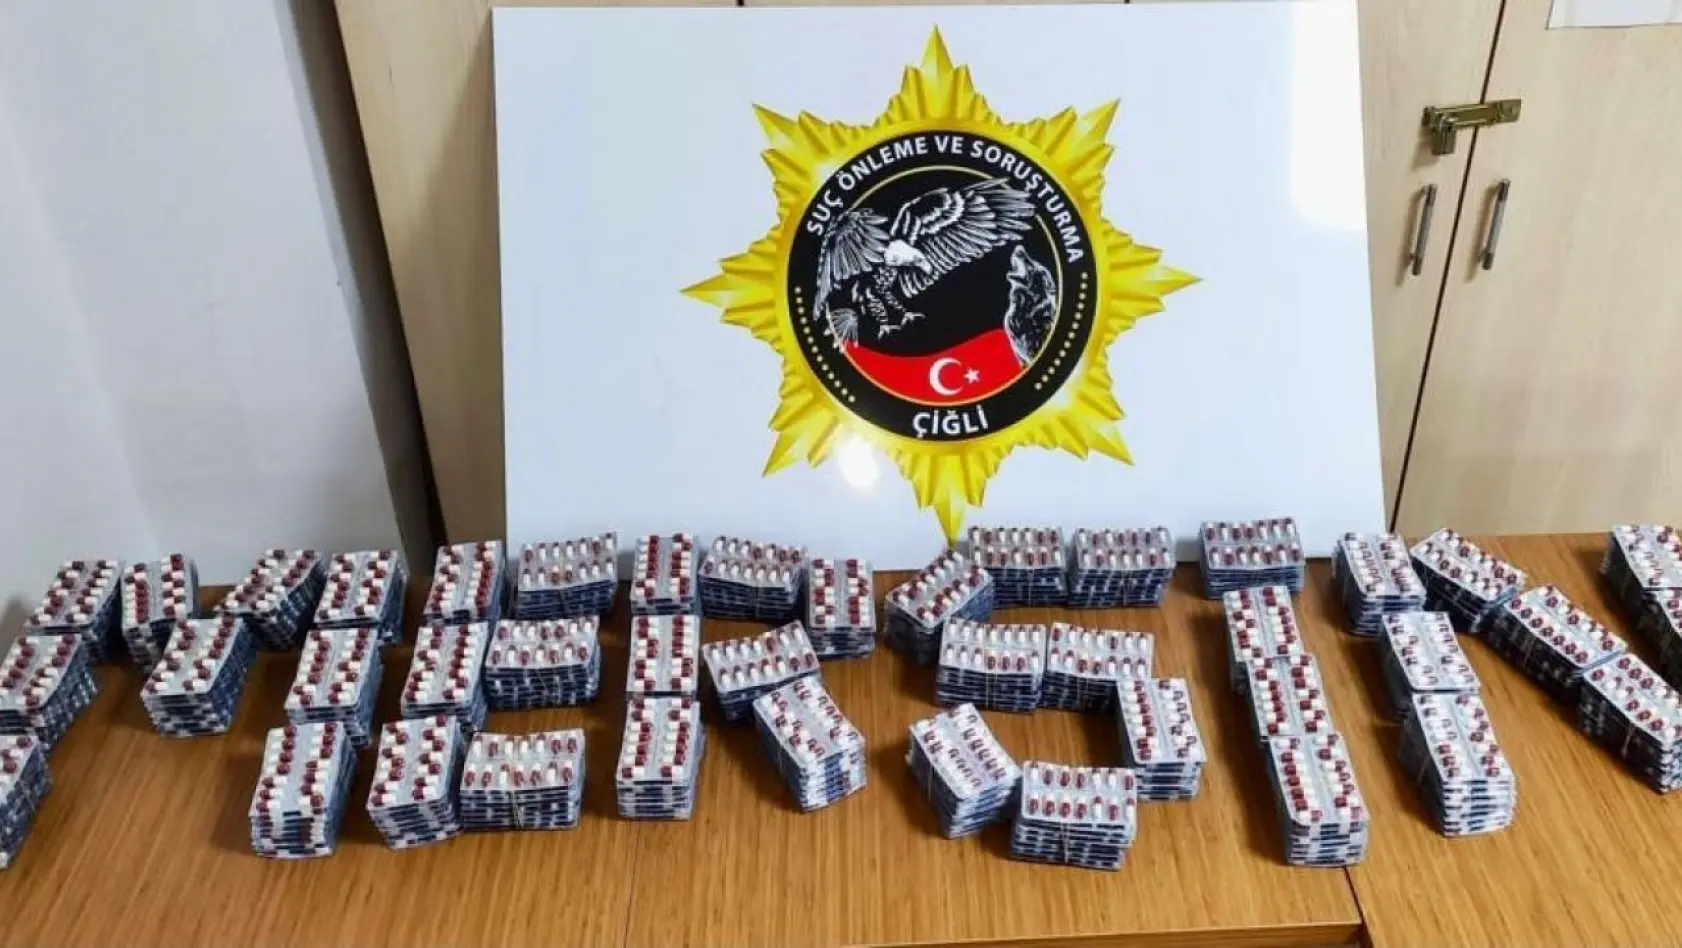 İzmir'de molotoflu saldırının faili, motosikletiyle uyuşturucu satarken yakalandı